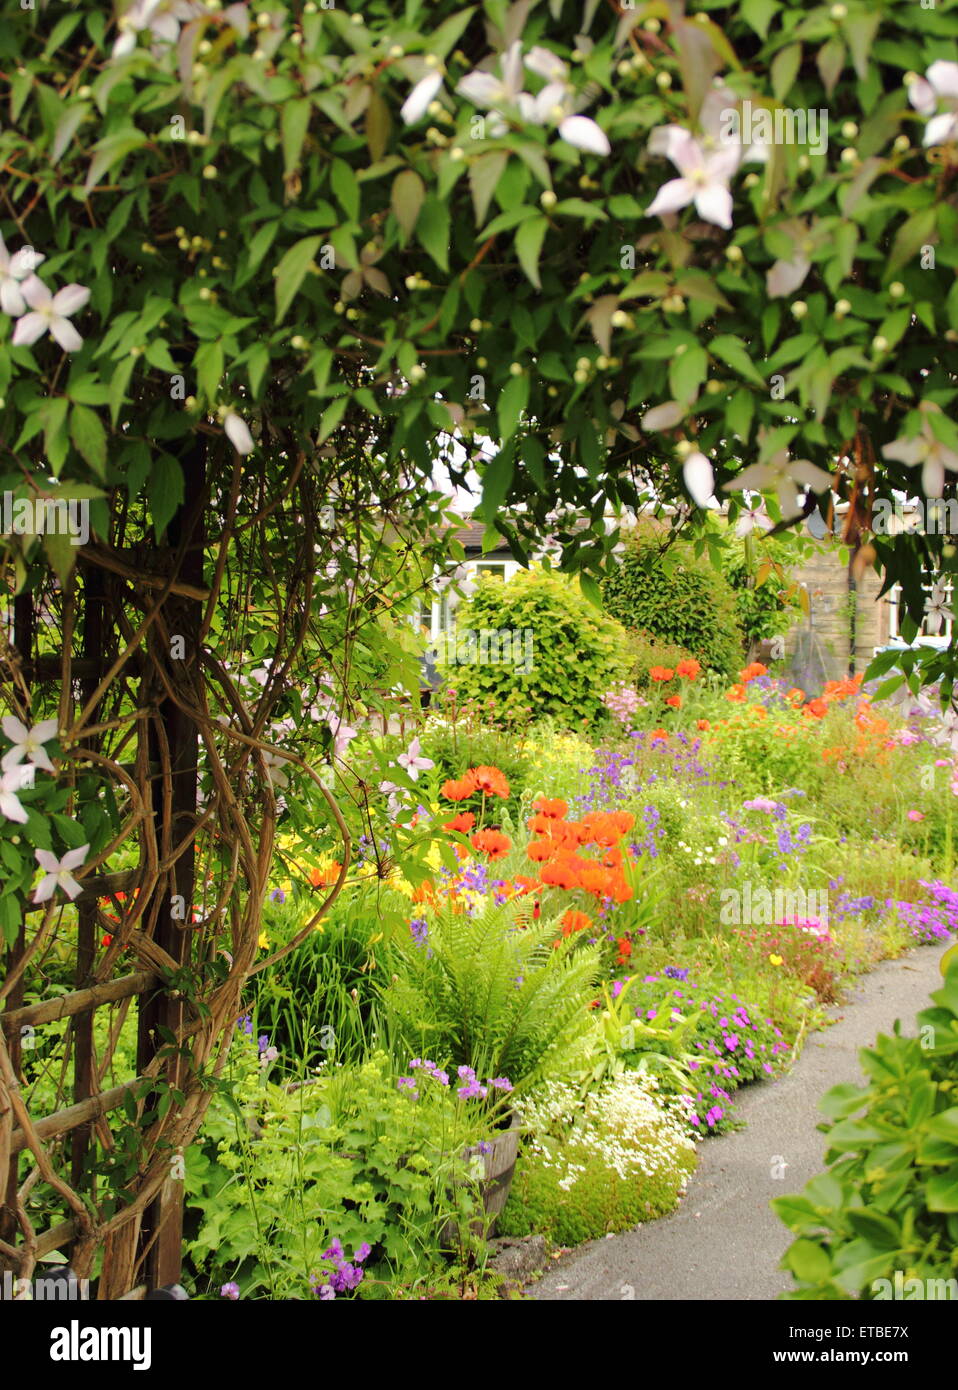 Un Chalet jardin border ponctuées par des coquelicots, aquilegias oriental et de fougères s'épanouit dans le Peak District, Derbyshire, Royaume-Uni Banque D'Images